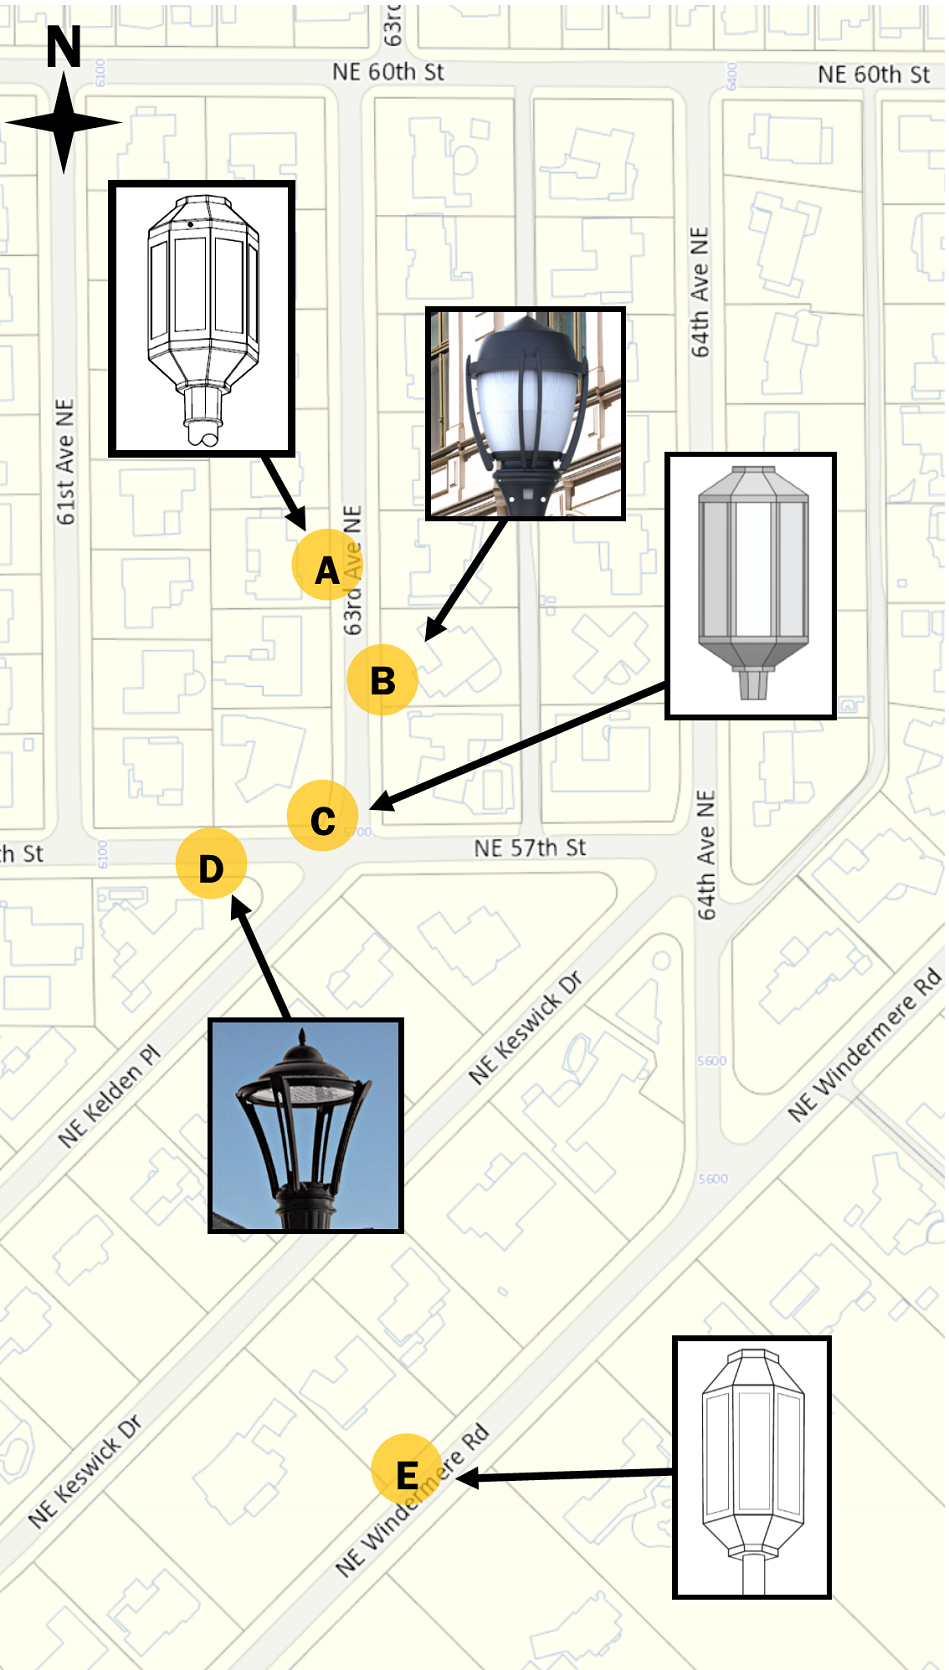 Map showing placement of pilot streetlight fixtures in Windermere neighborhood